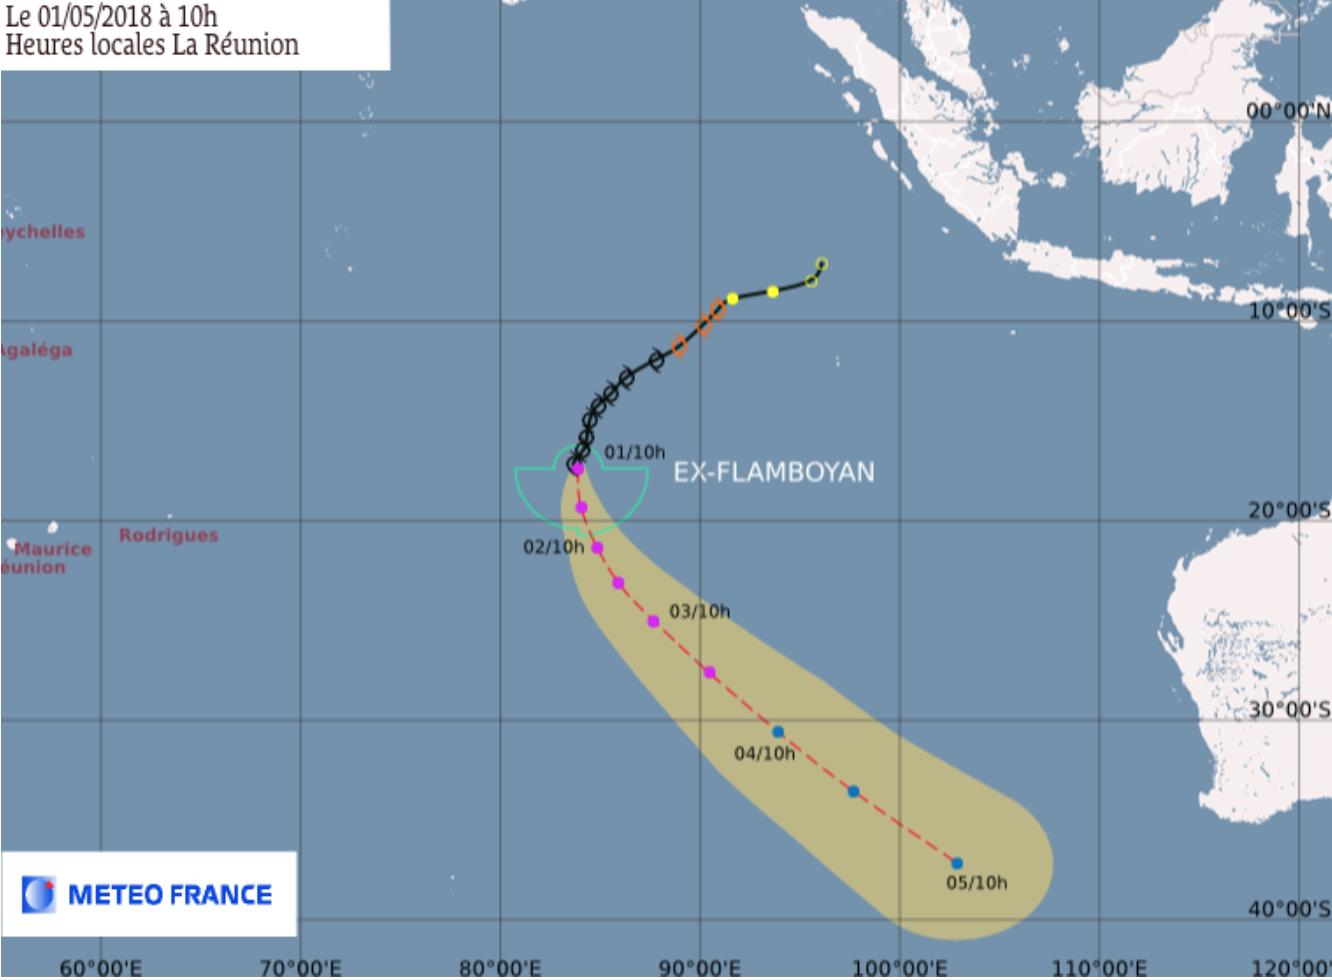 Ex-Flamboyan baisse en intensité à 2980 km de La Réunion